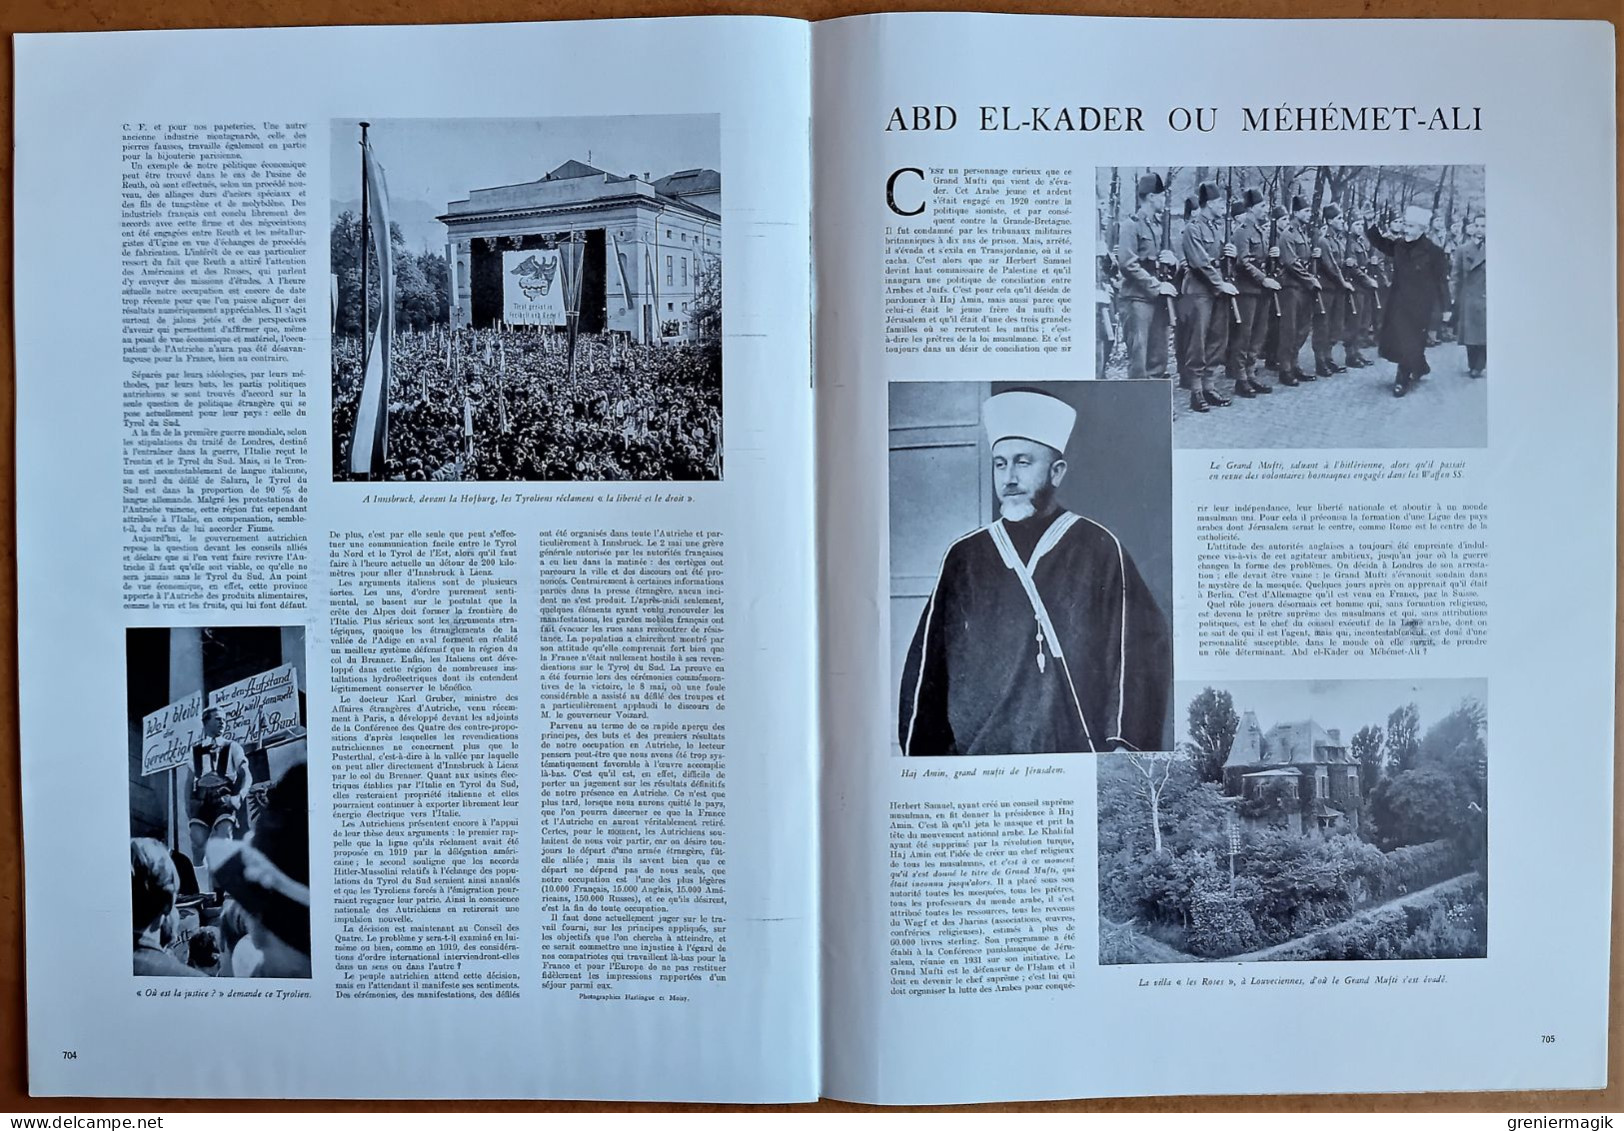 France Illustration N°38 22/06/1946 Galerie des Mirabeau Aix/France en Autriche/Mufti de Jérusalem Hadj Amin al-Husseini